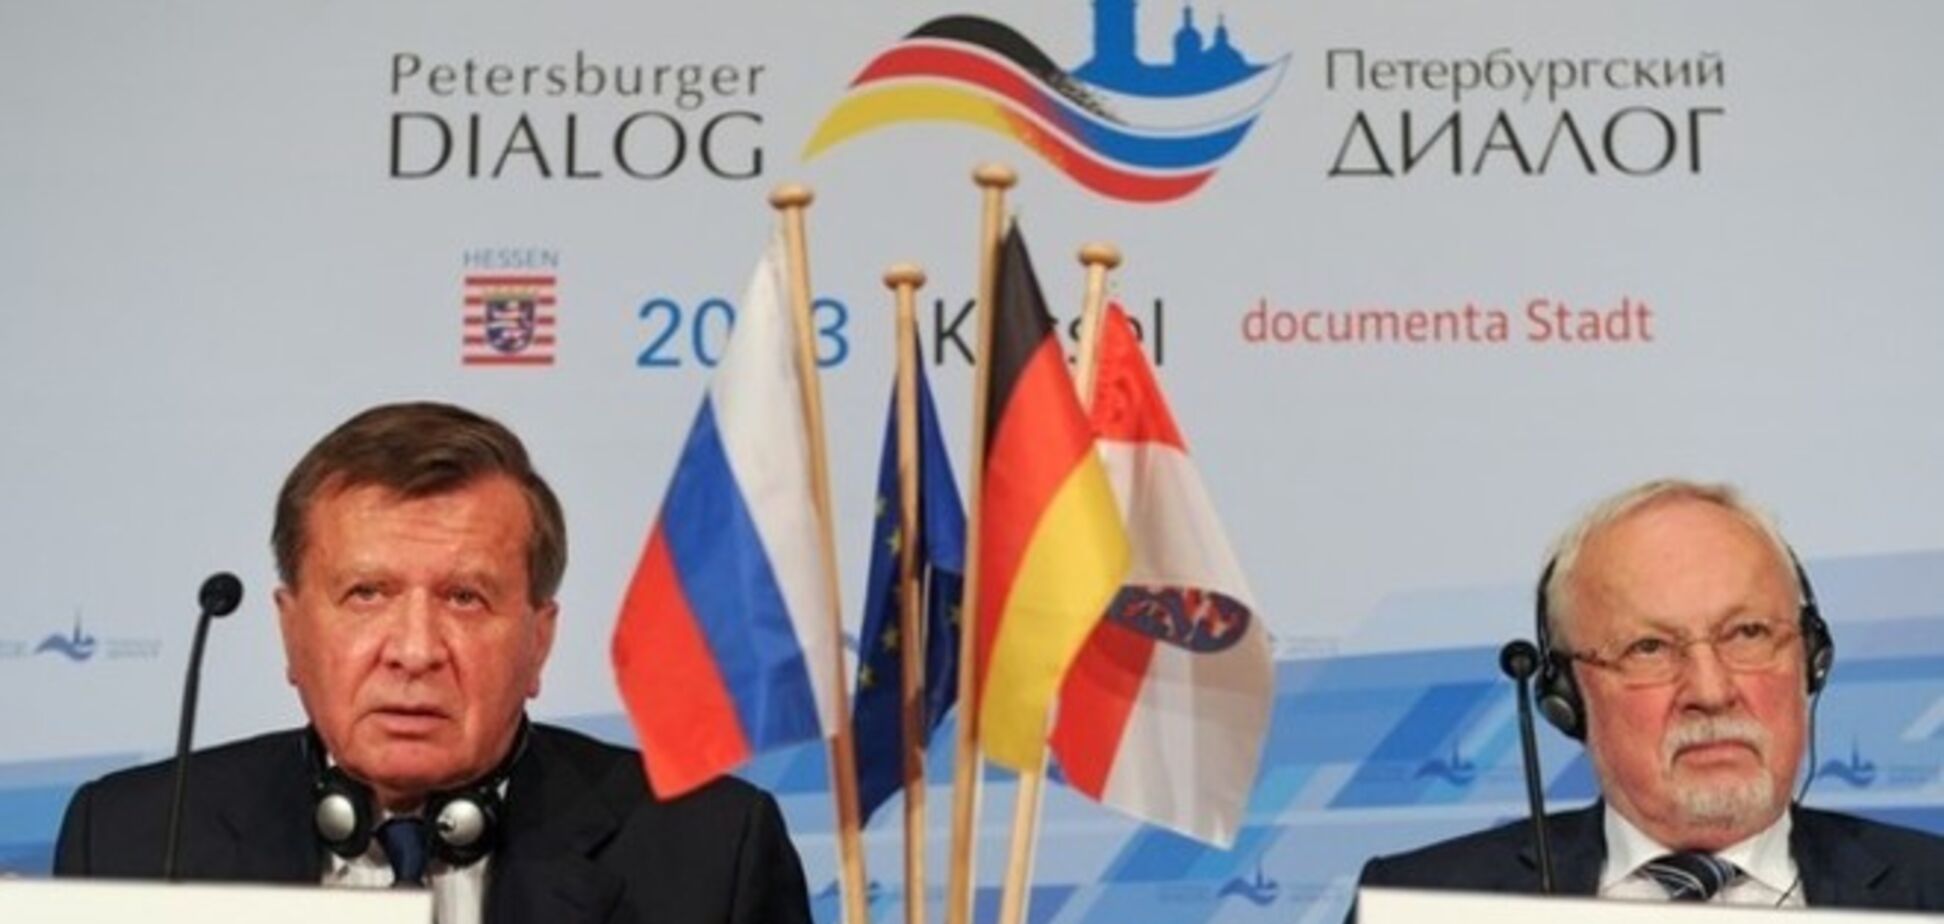 В Германии объявили бойкот российскому форуму из-за Украины